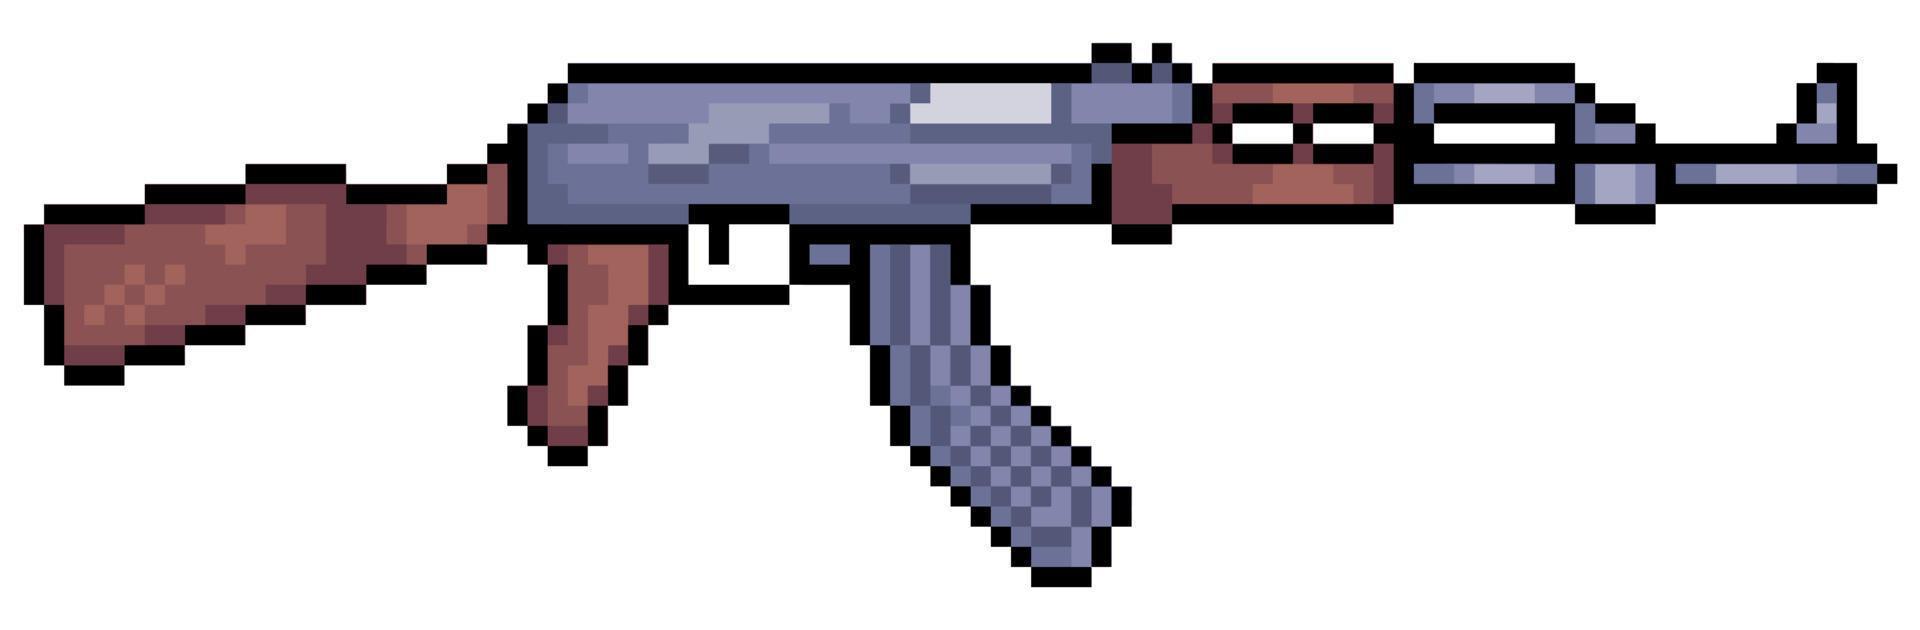 pixel art rifle ak 47. vuurwapen vector pictogram voor 8-bits spel op witte achtergrond